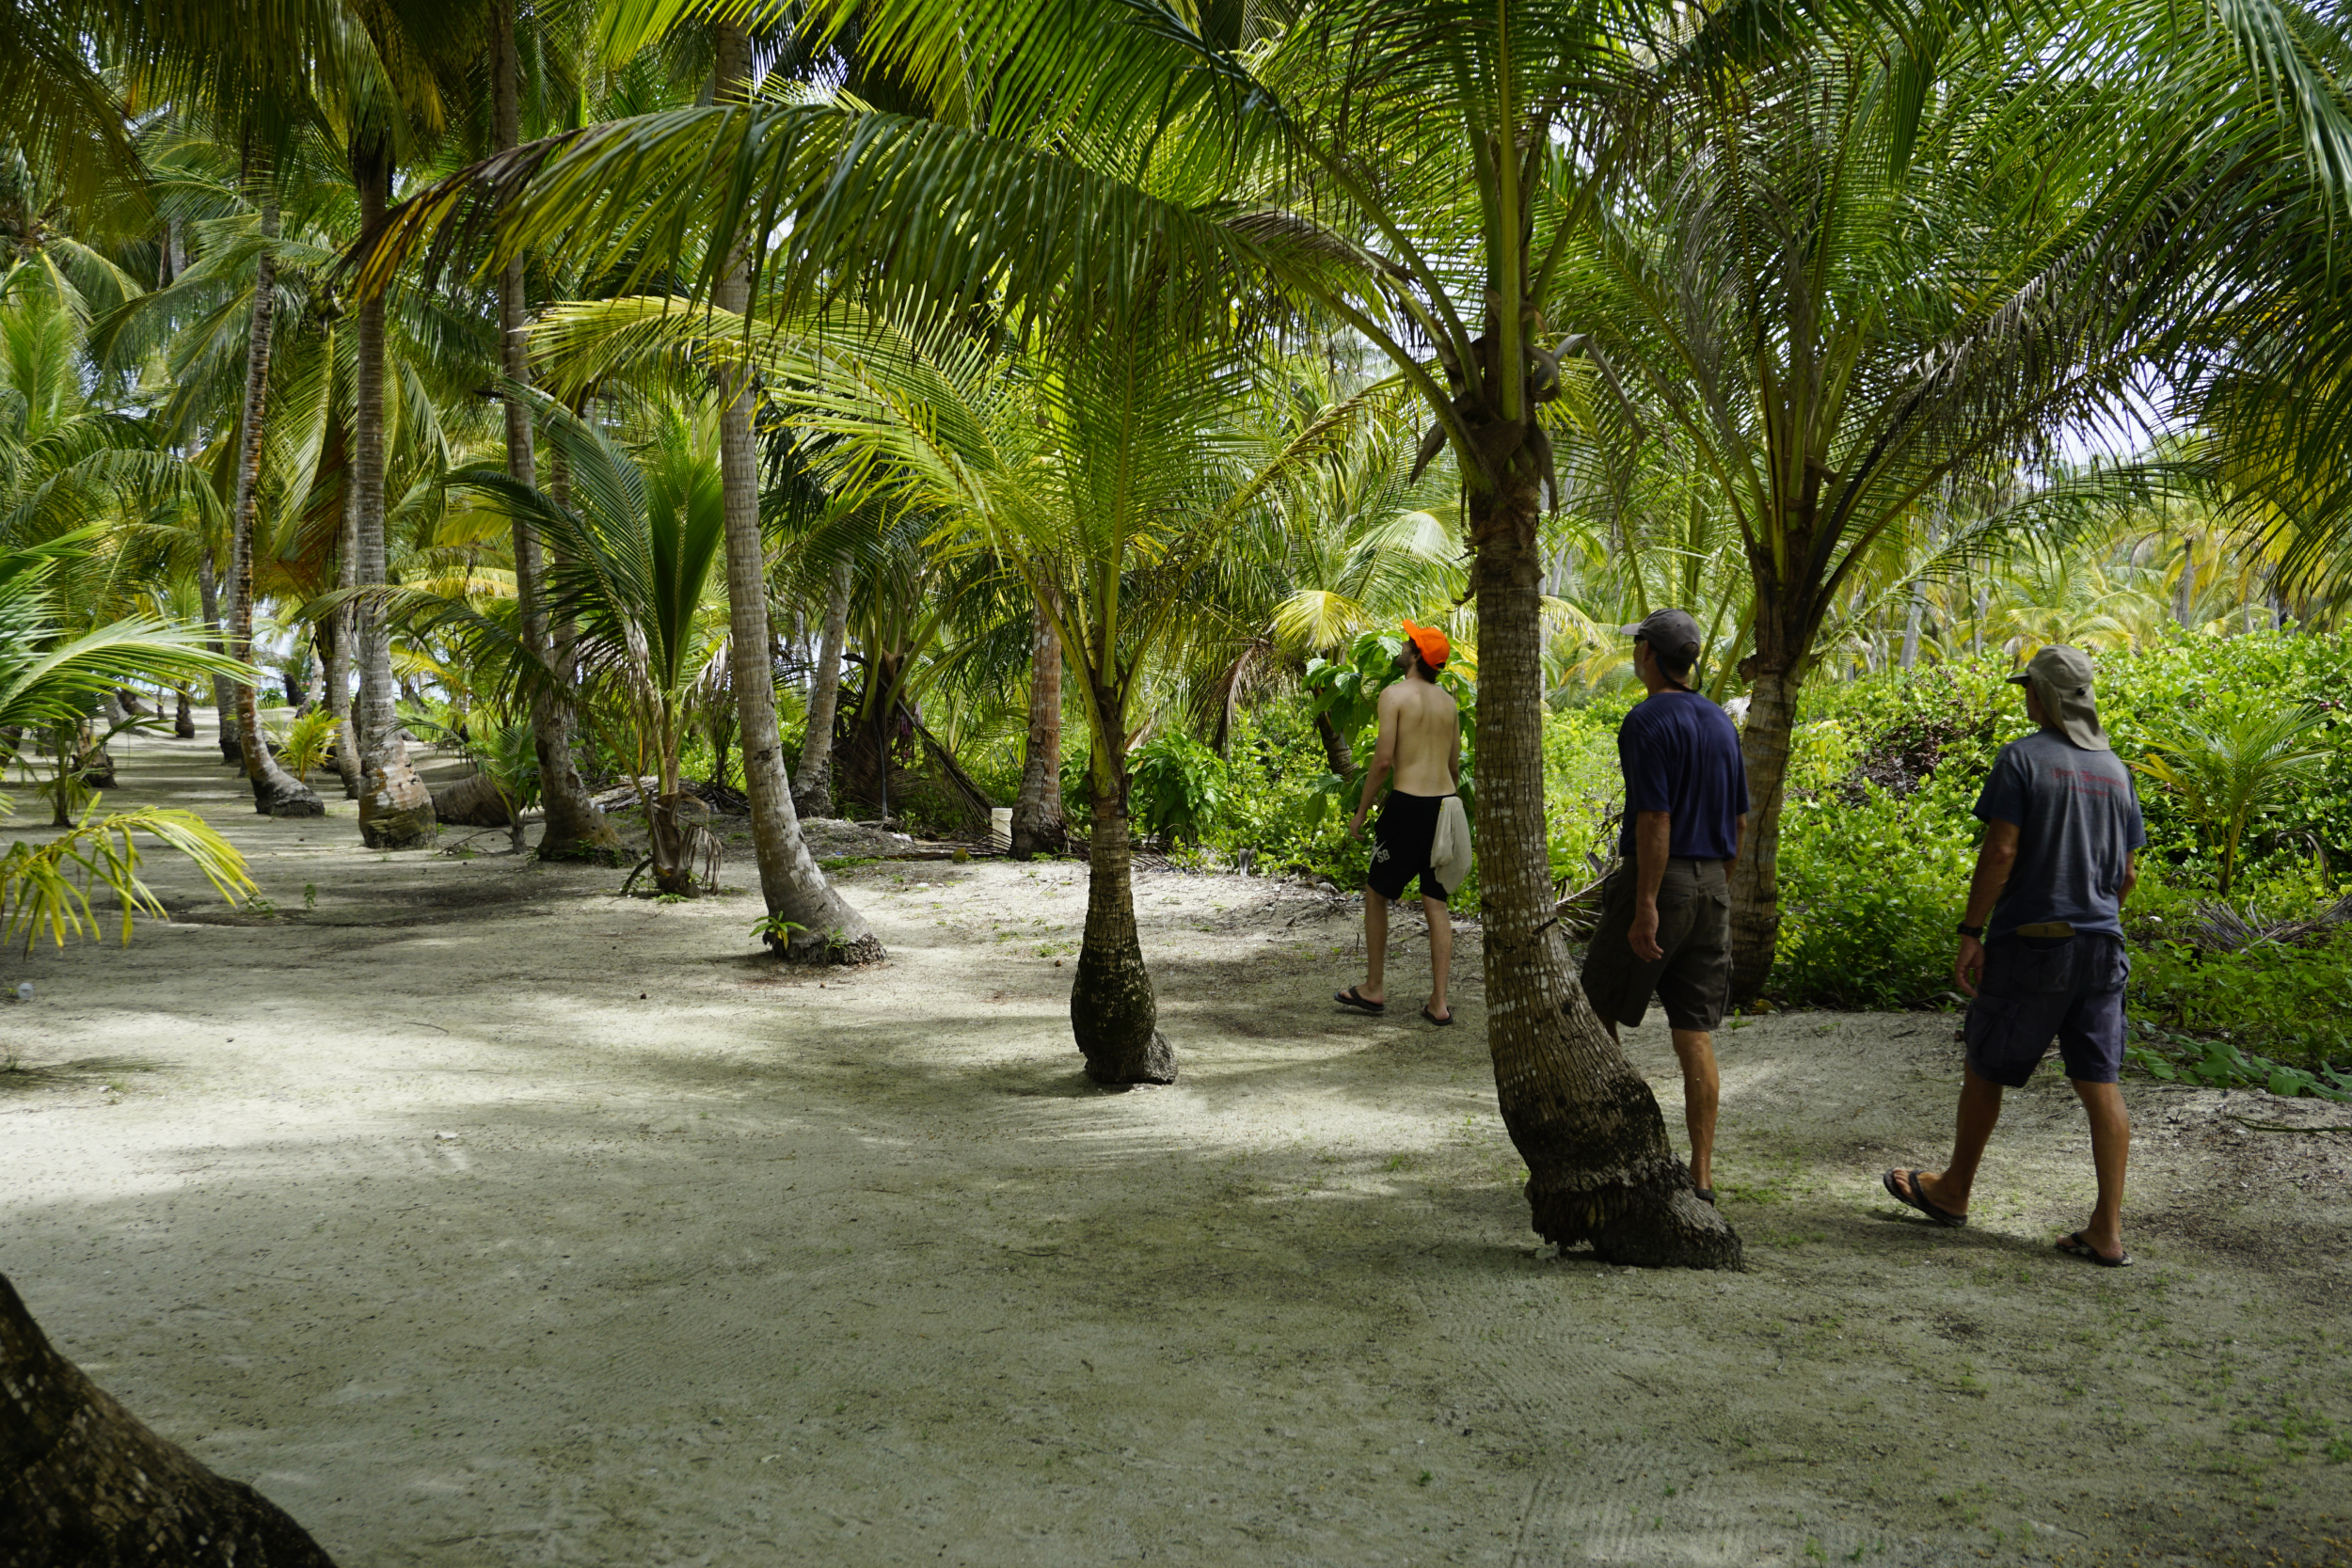 28. Walk around Uchutupu Dummet (Chichime Cay)